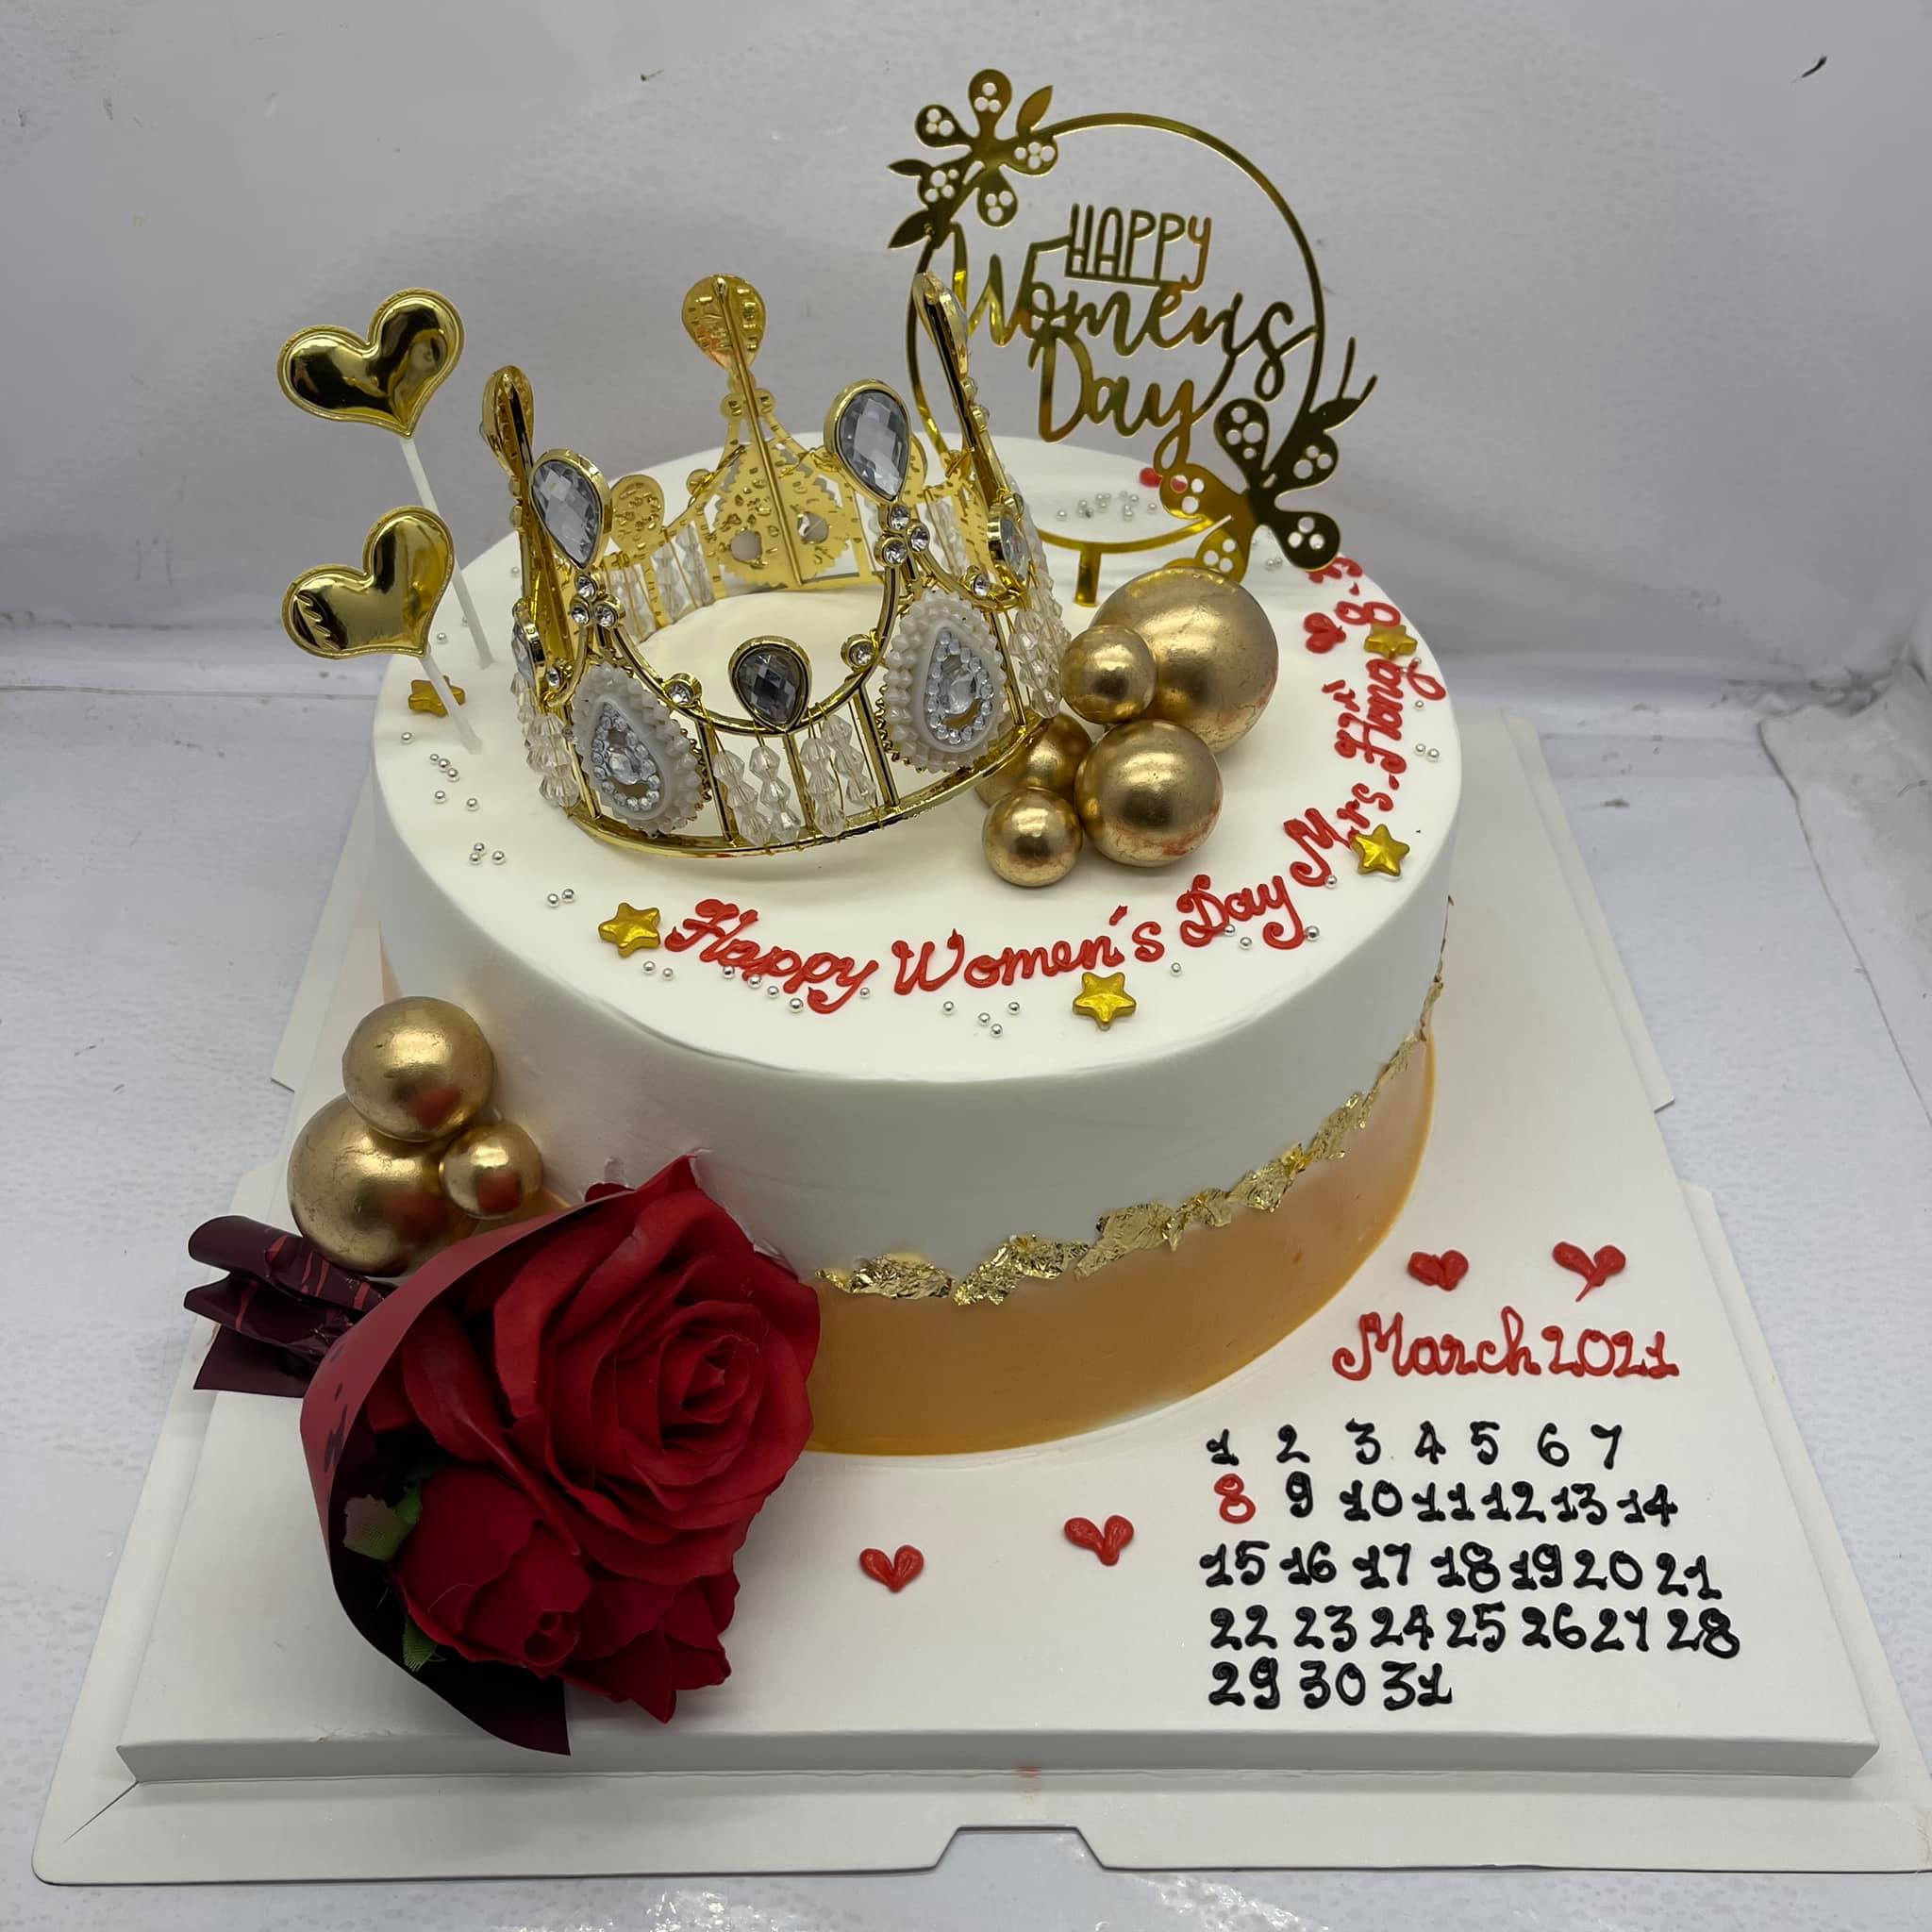 Vương miện là một biểu tượng hoàng gia tuyệt vời để làm nổi bật bánh sinh nhật bé gái của bạn. Hình ảnh này cho thấy một chiếc bánh vương miện tuyệt đẹp được thiết kế đơn giản nhưng đầy yêu thương. Hãy xem qua để nhận được ý tưởng cho tiệc sinh nhật của bé gái bạn.